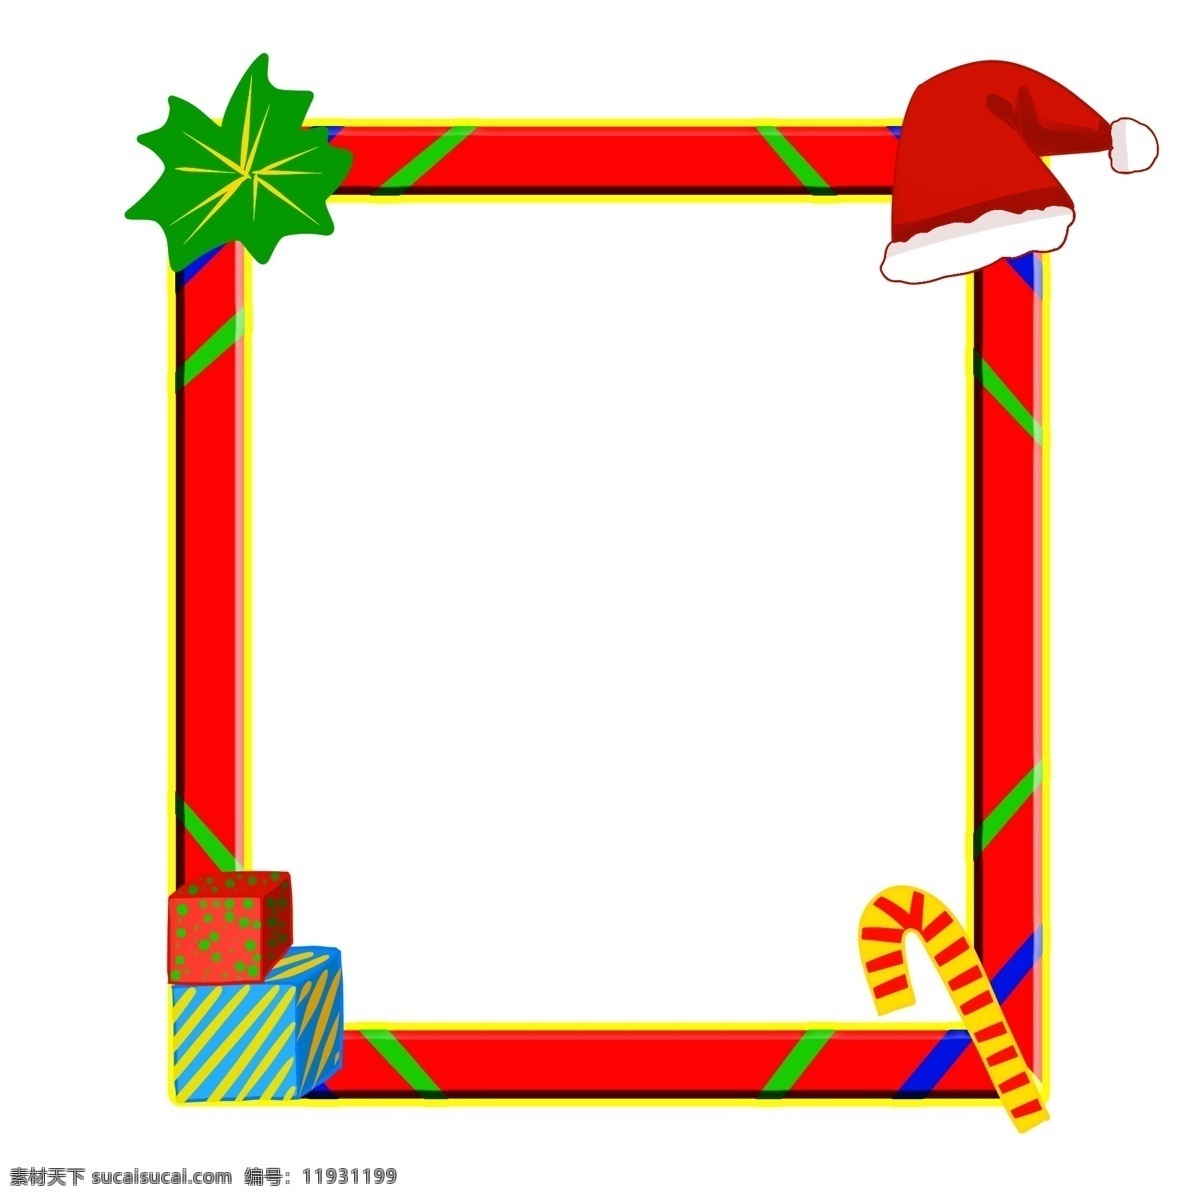 圣诞 圣诞节 夜 红色 长方形 边框 卡通 装饰 圣诞夜 红色边框 长方形边框 卡通装饰 喜庆 节日 撞色边框 可爱装饰